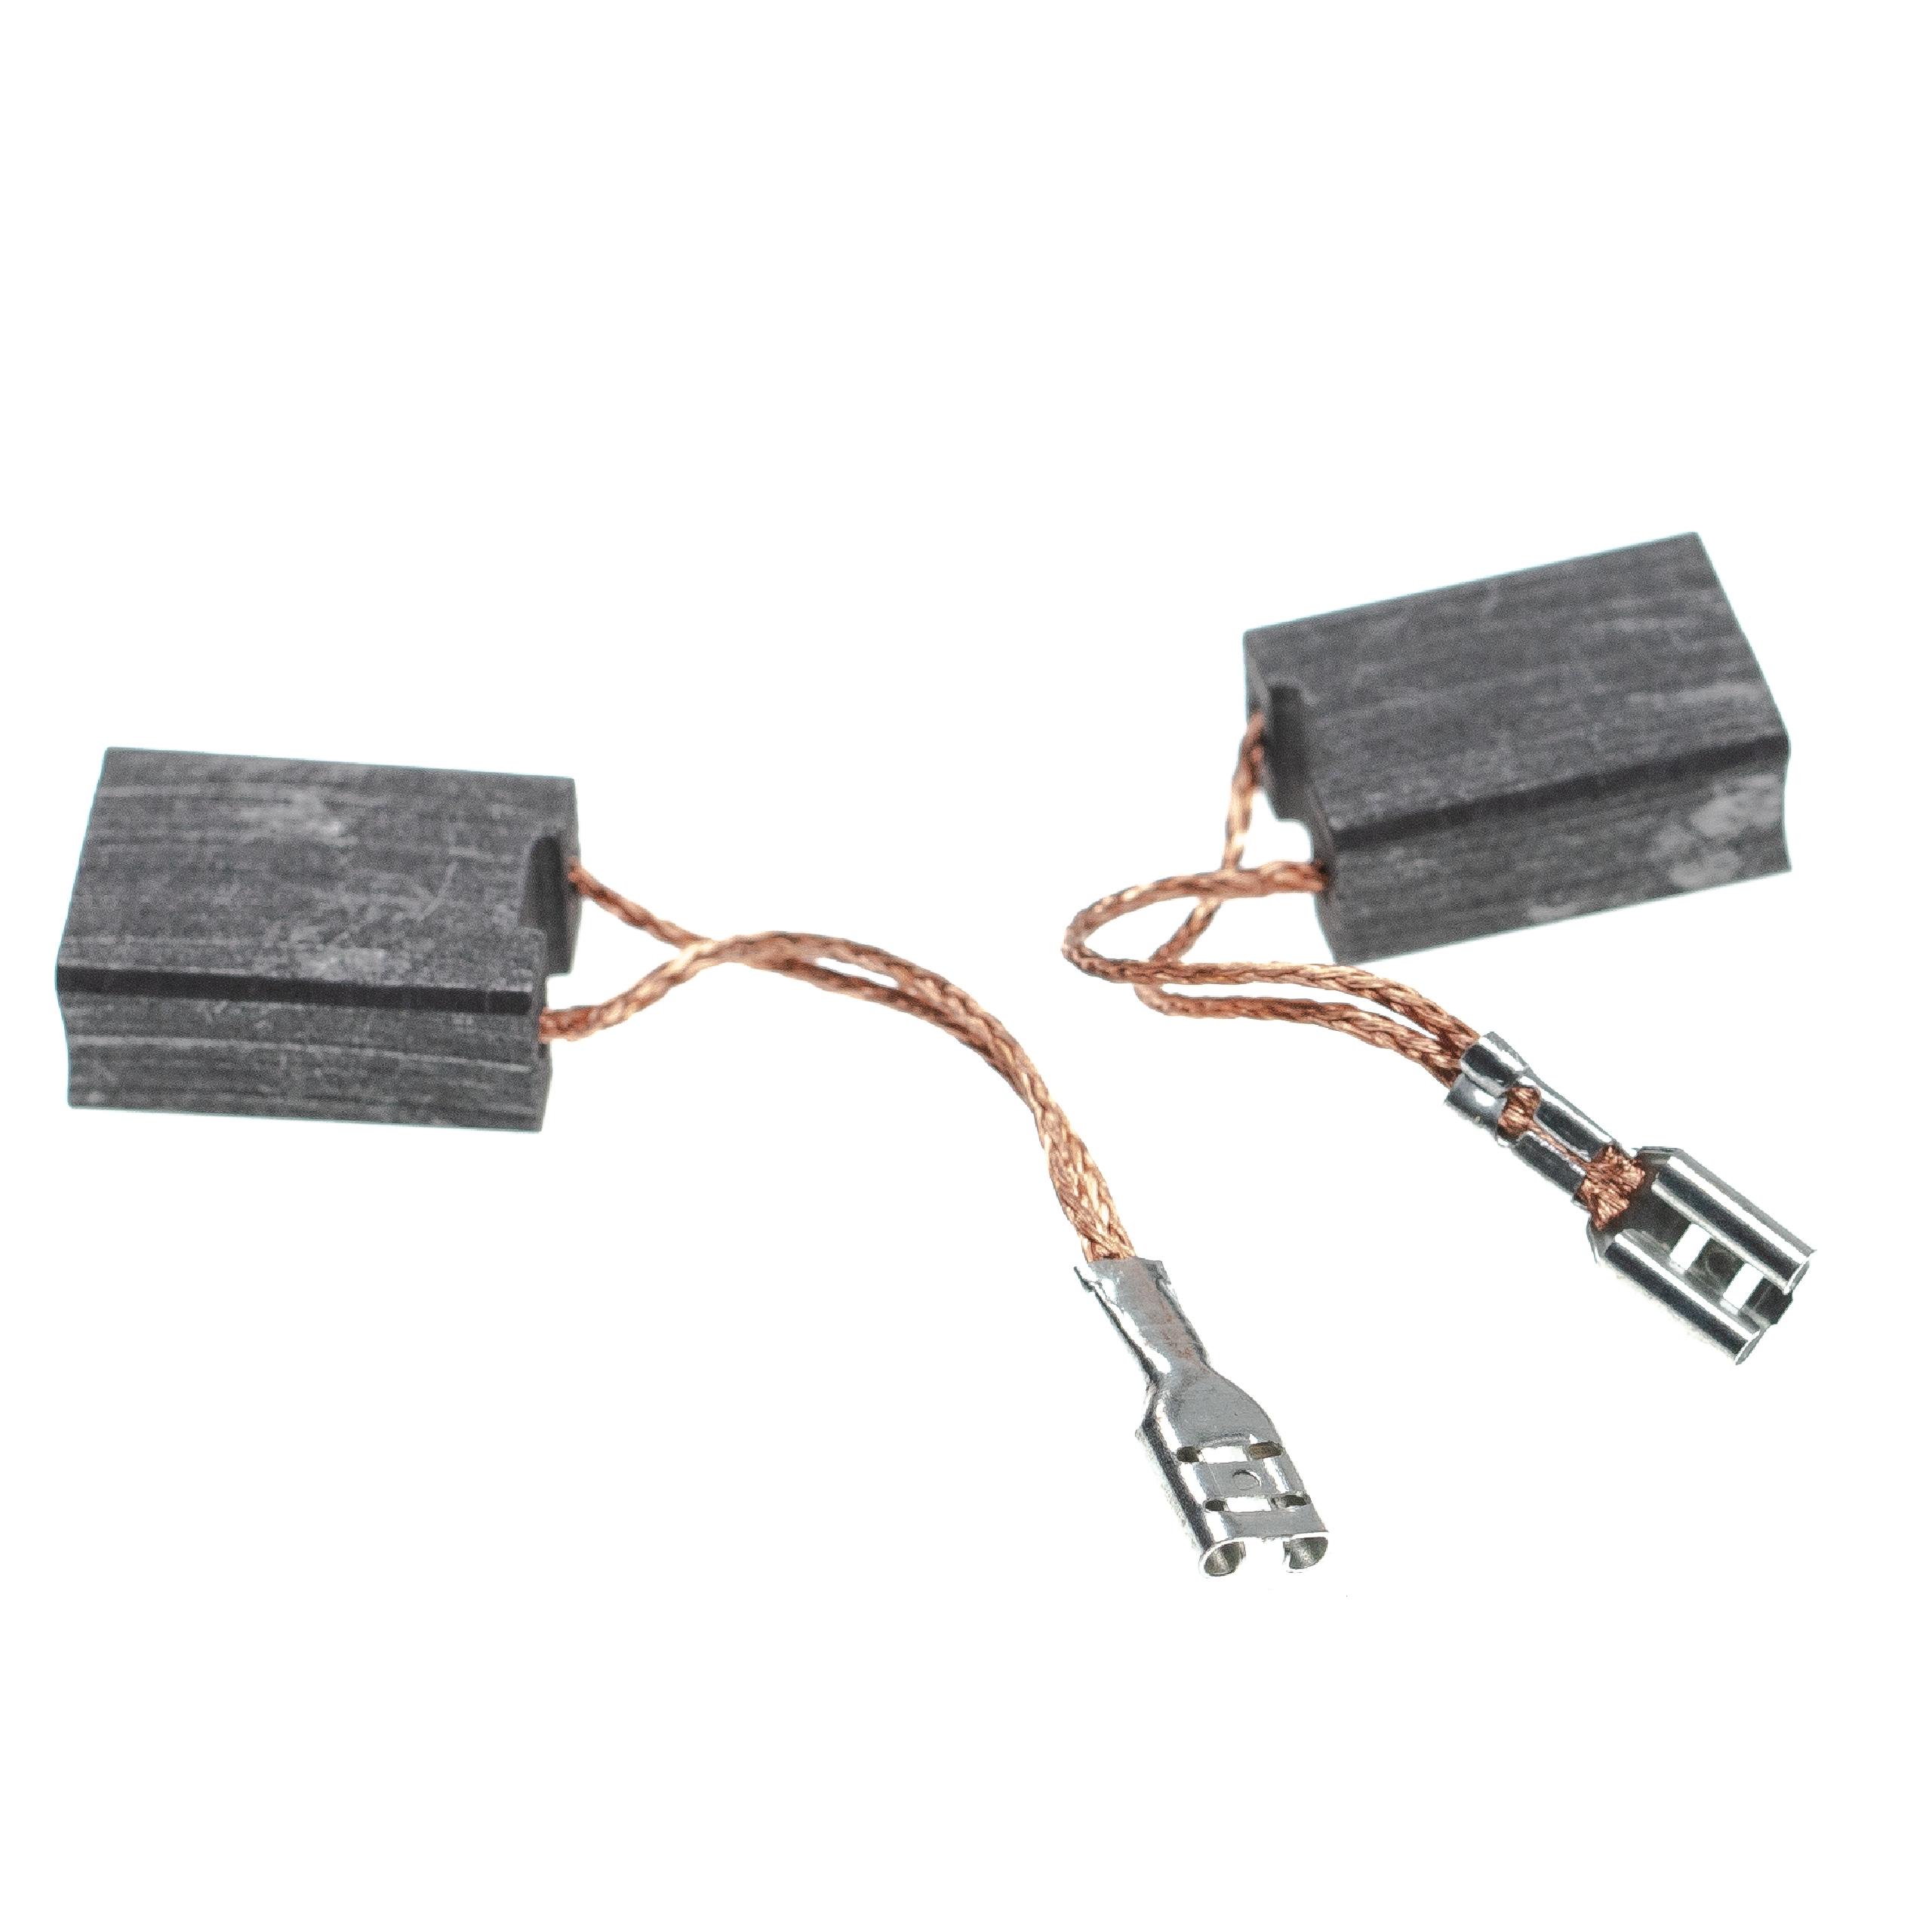 2x Spazzola in carbone per utensili W2030 Metabo + manicotto angolato a spina piatta, 18,9 x 14 x 8 mm